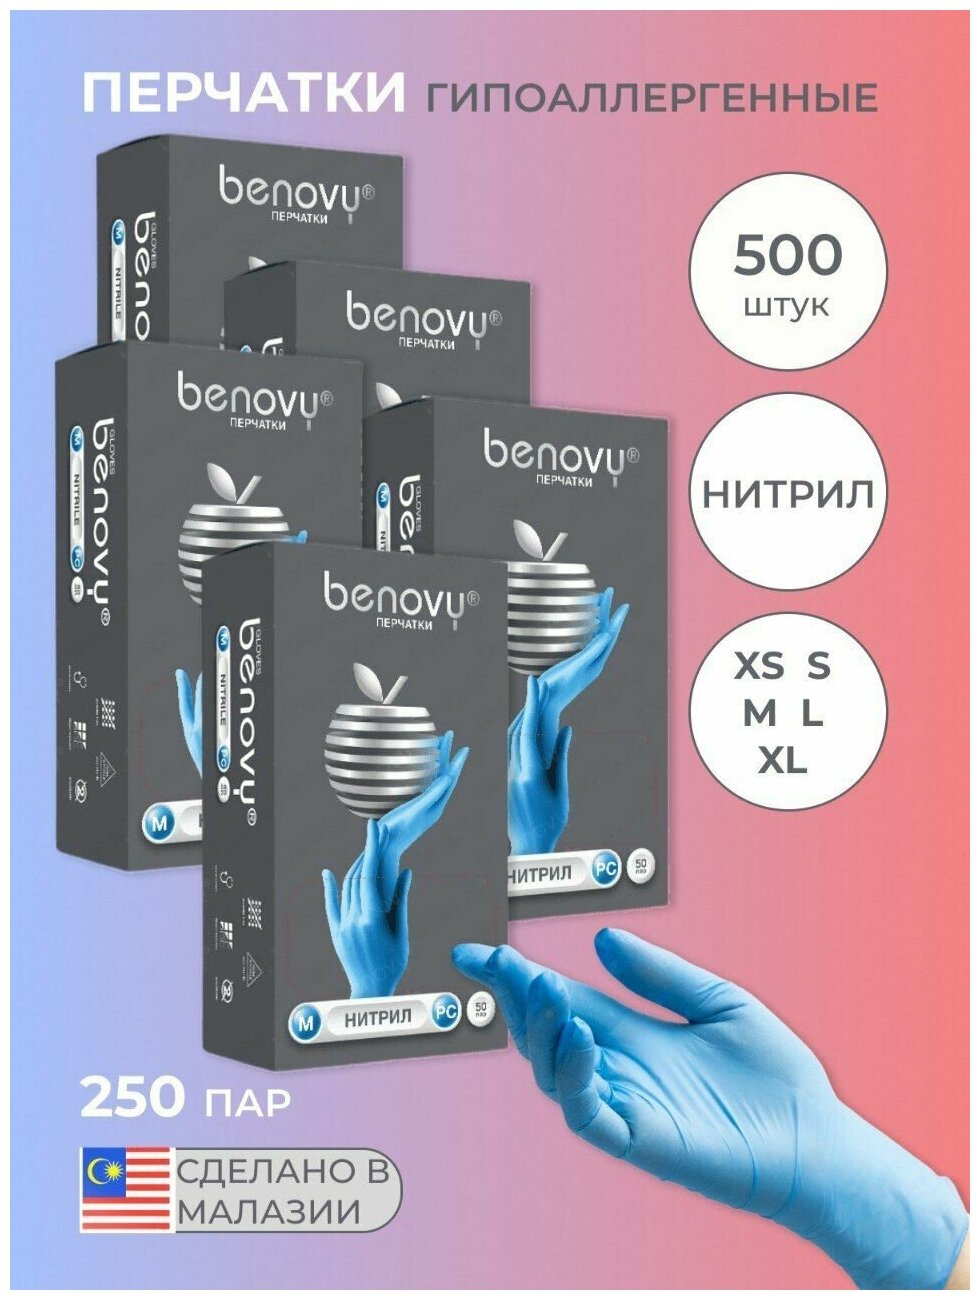 Перчатки медицинские BENOVY диагностические голубые нитриловые размер XL 500 шт 250 пар